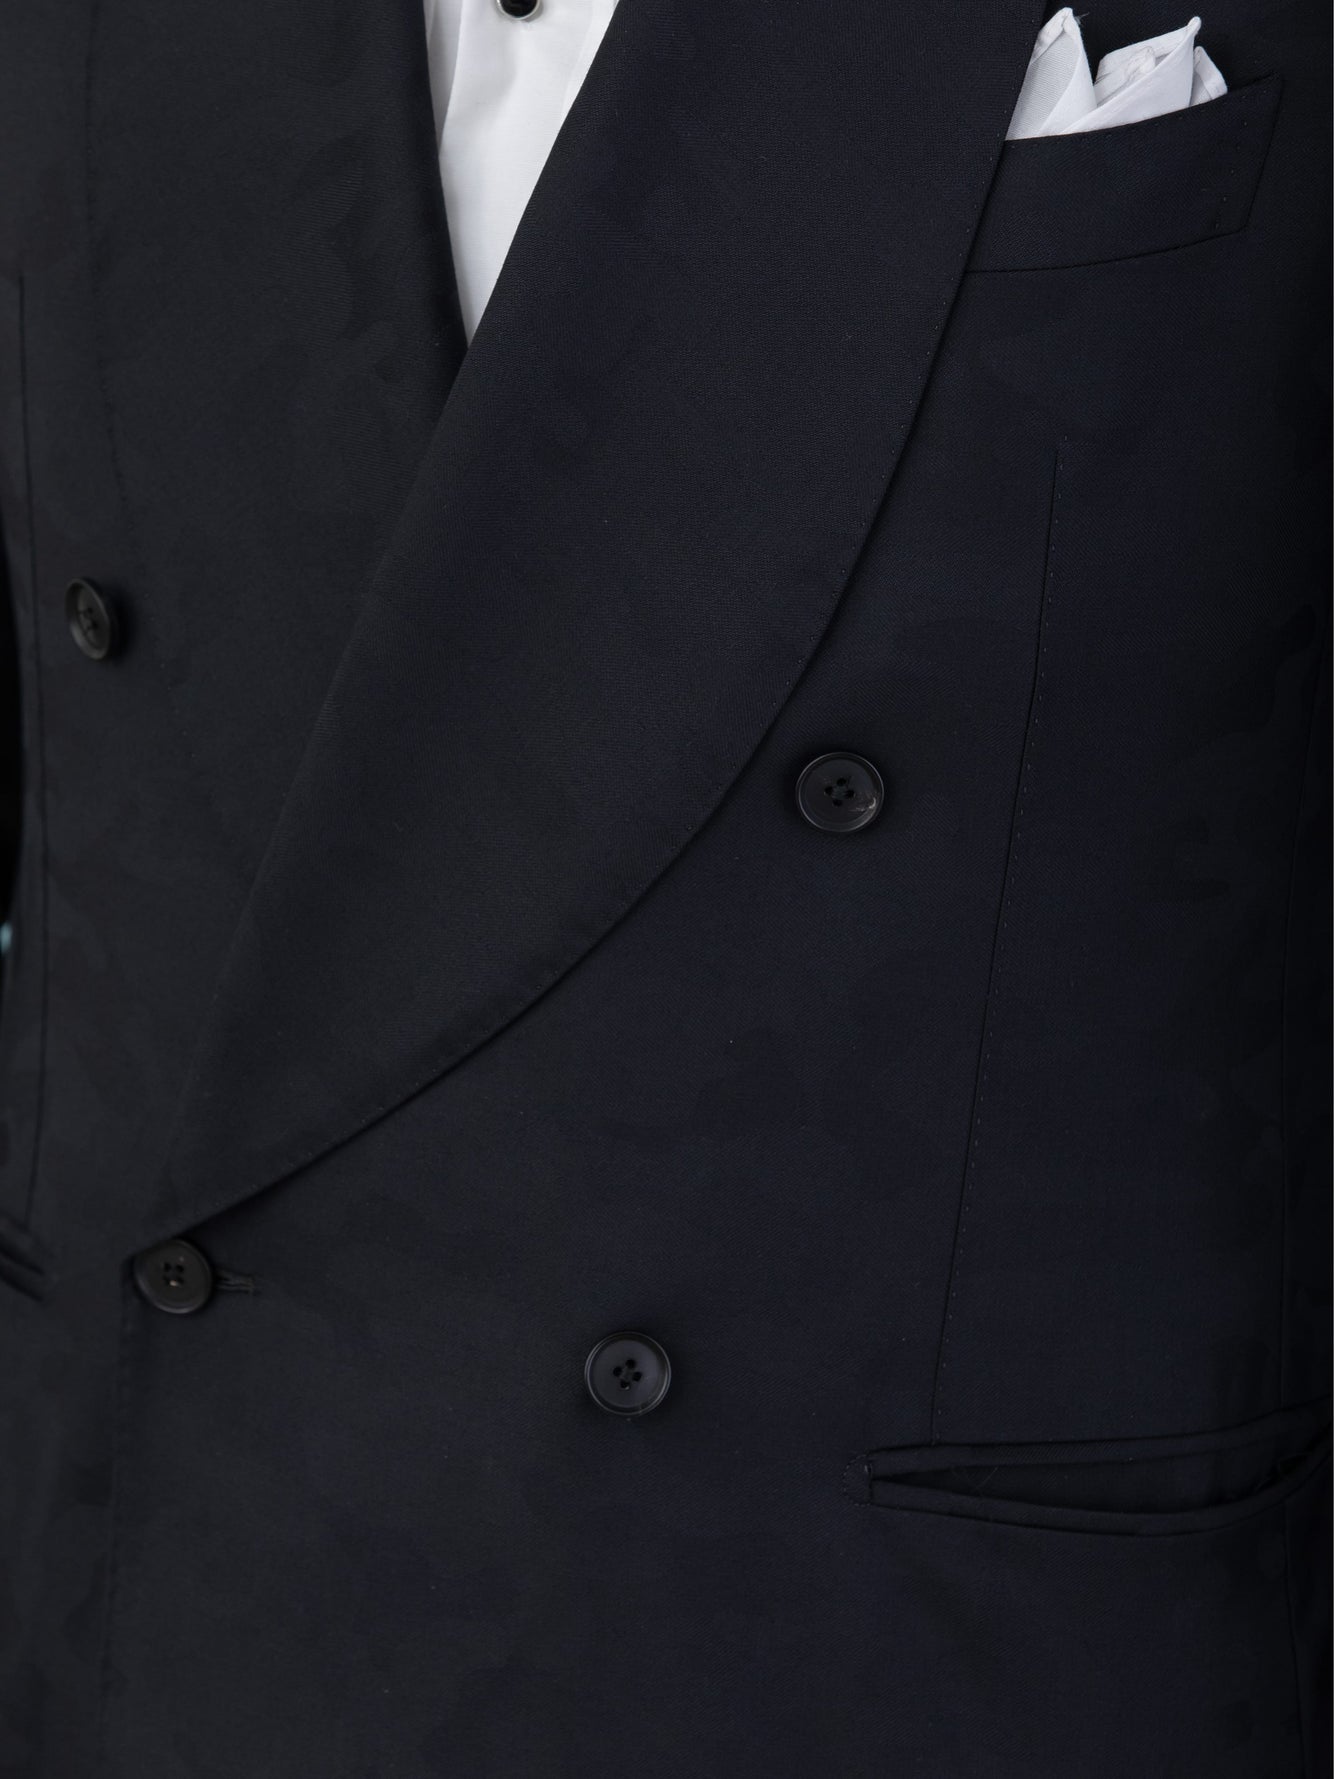 Black Camouflage Super 110's Tuxedo Suit - Grand Le Mar